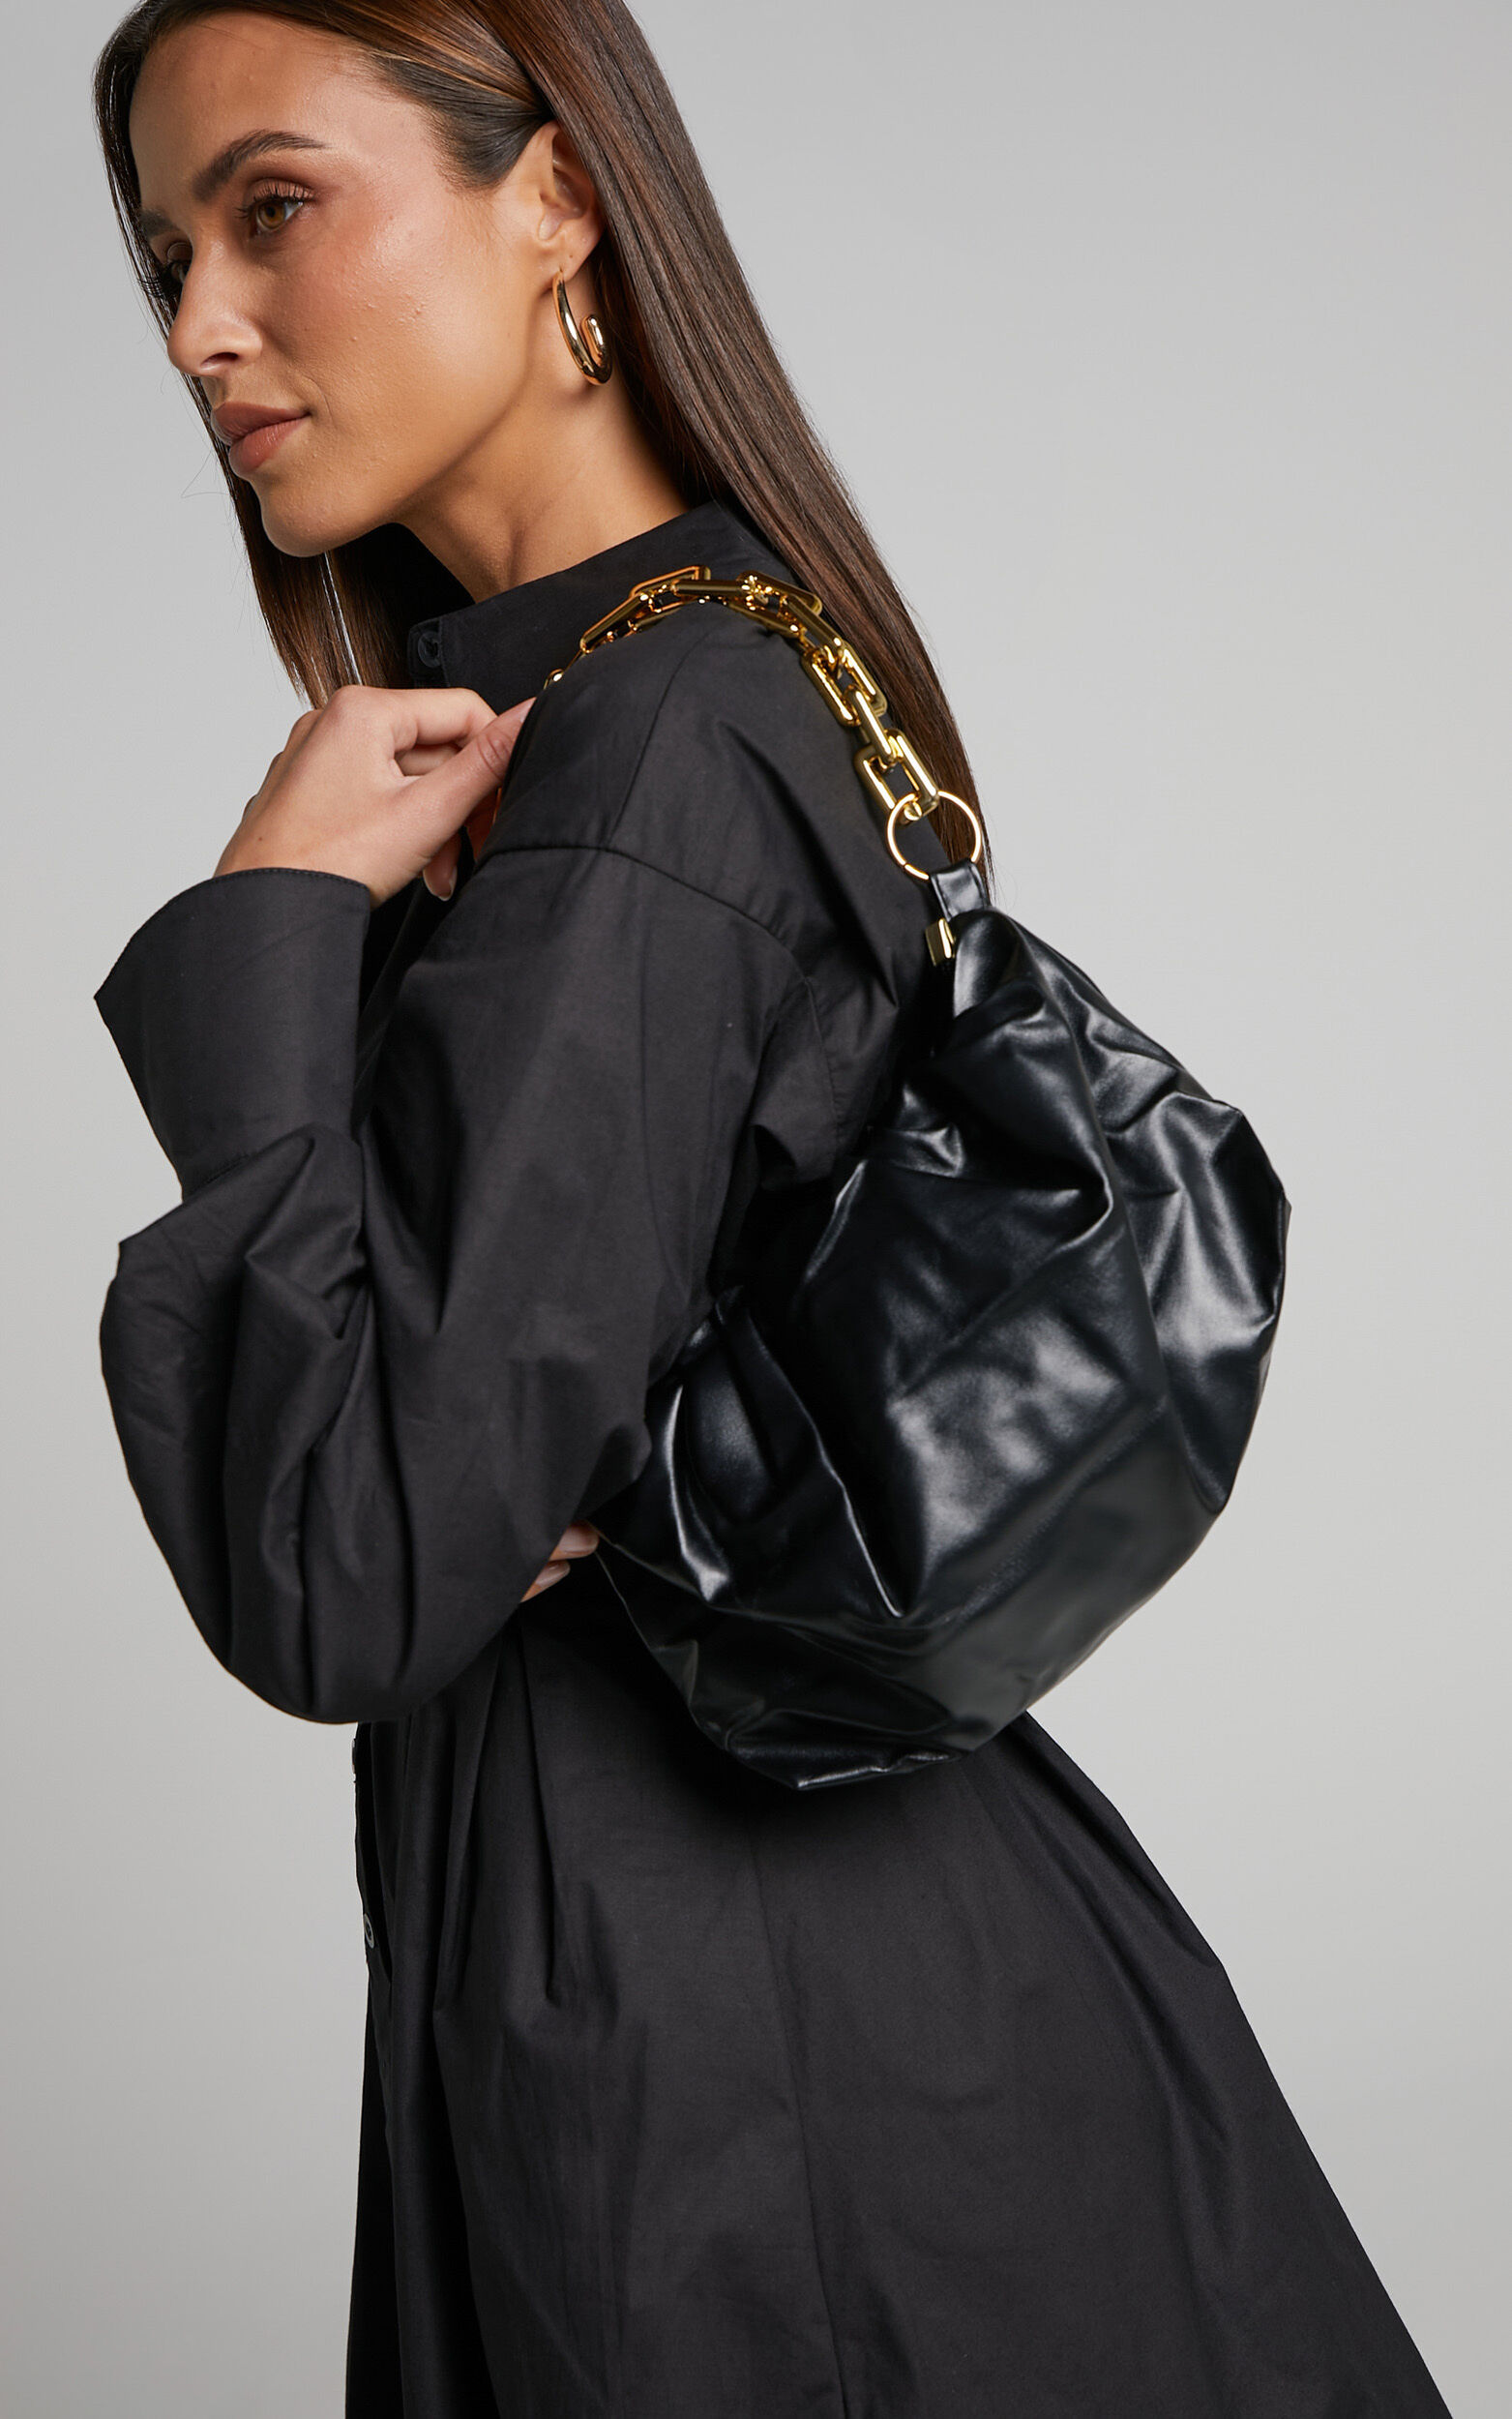 Karyme Gold Chain Strap Pouch Shoulder Bag in Black - NoSize, BLK1